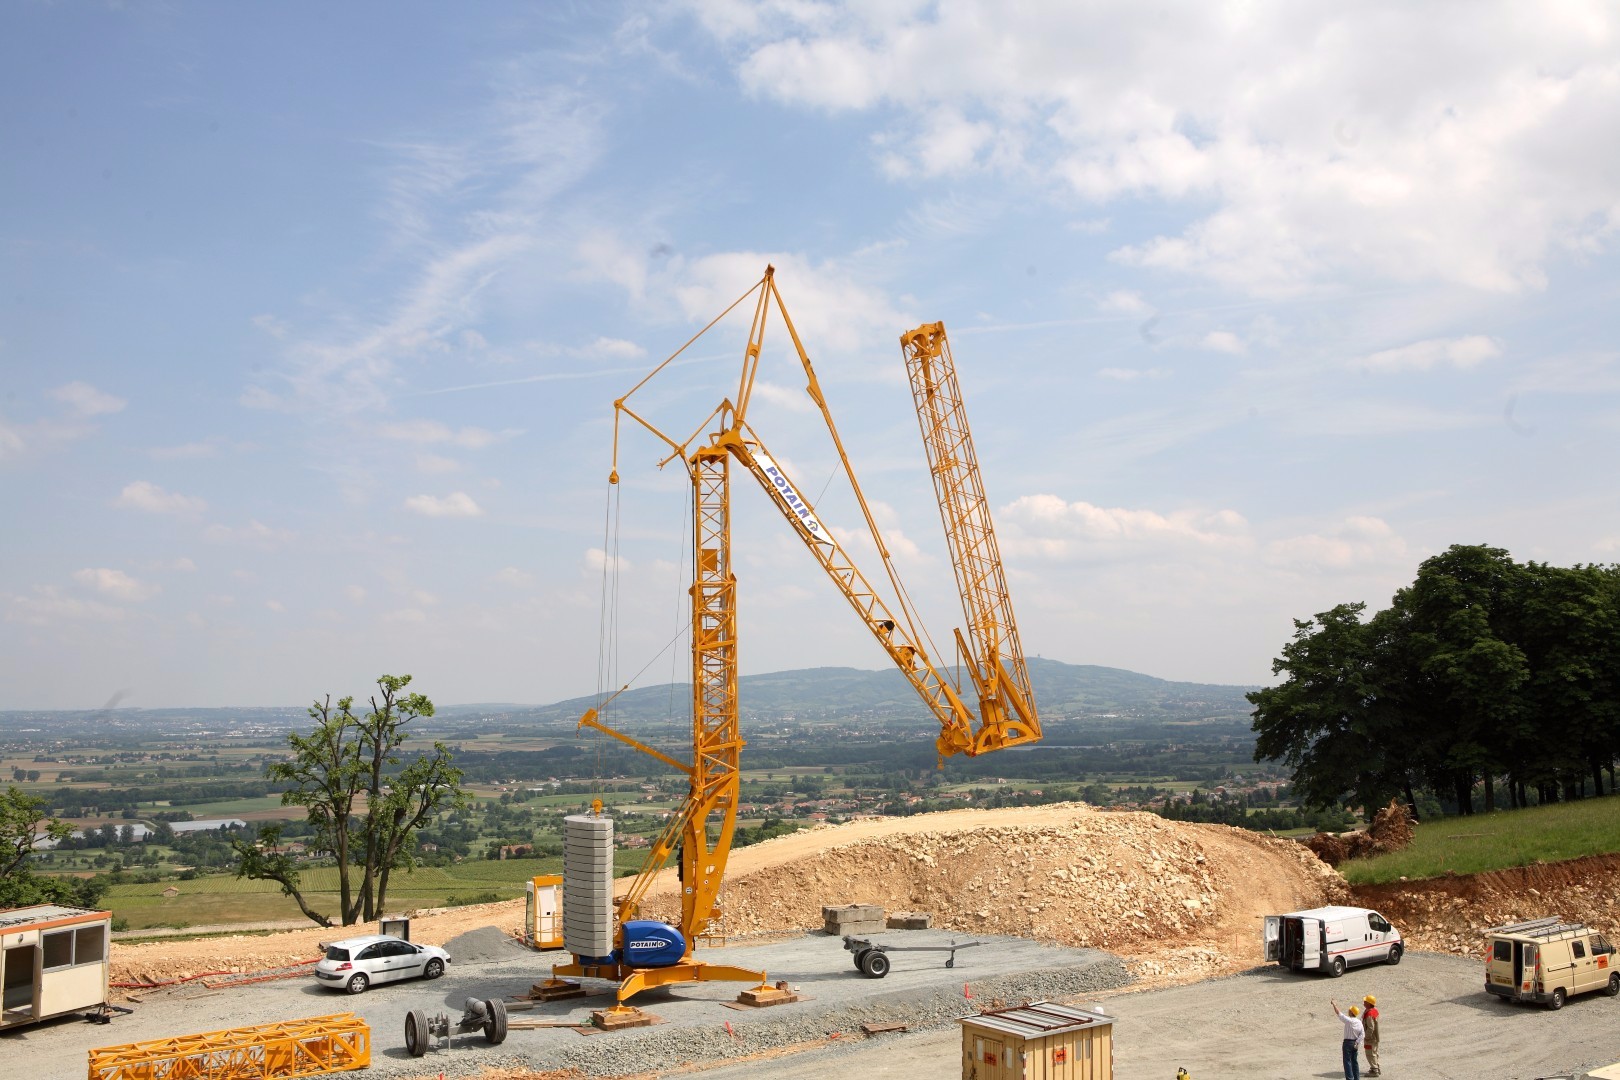 Potain-Igo-T70-Self-erecting-crane-Tower-crane-Construction-crane-Hoisting-crane